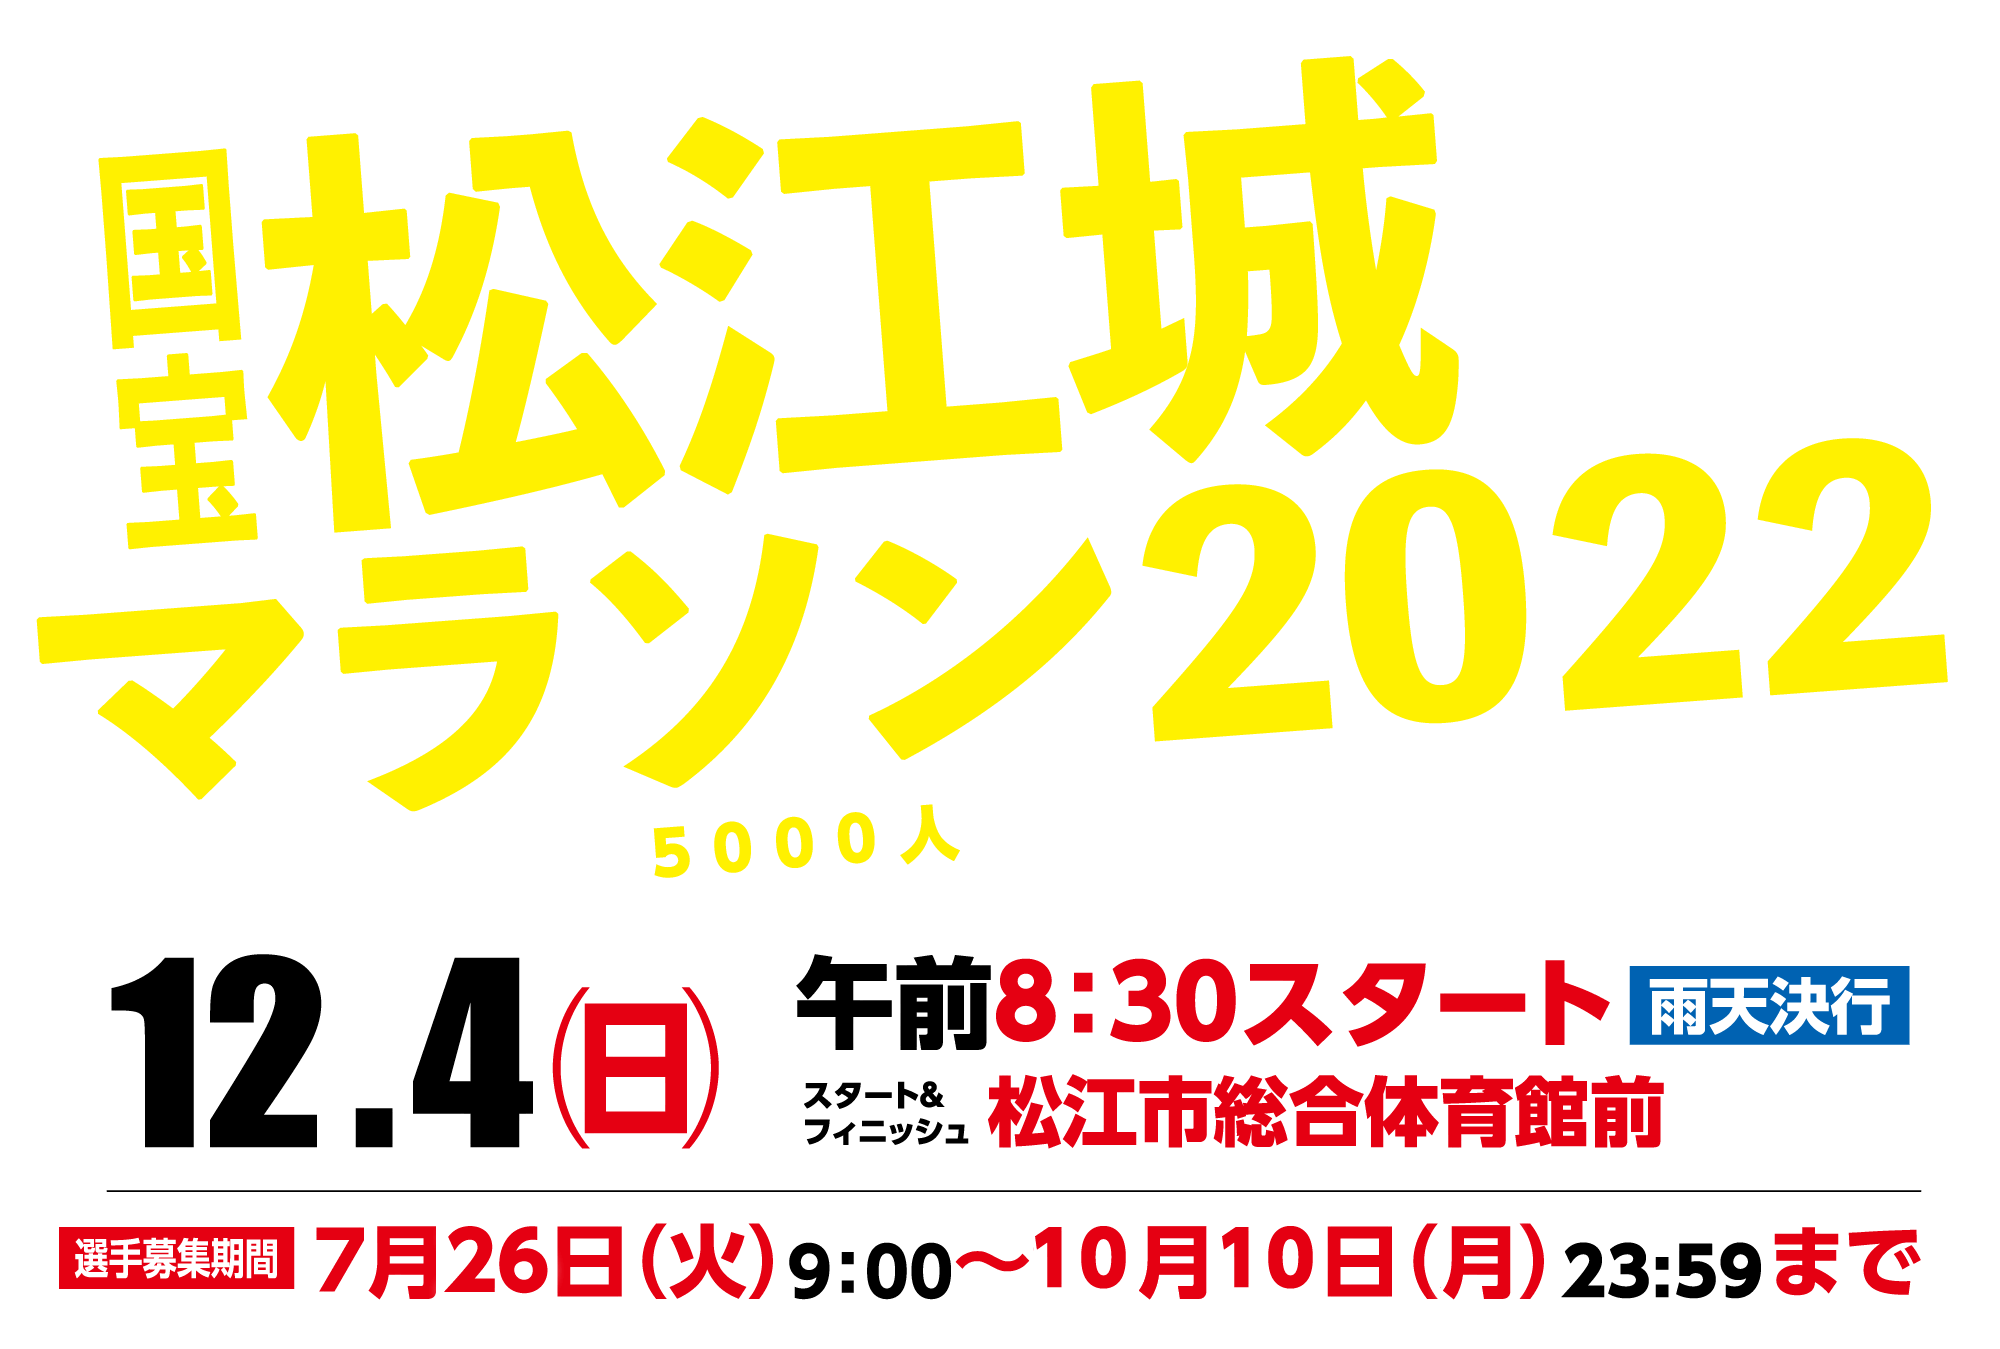 国宝松江城マラソン MATSUE CASTLE MARATHON 2022.12.4 開催